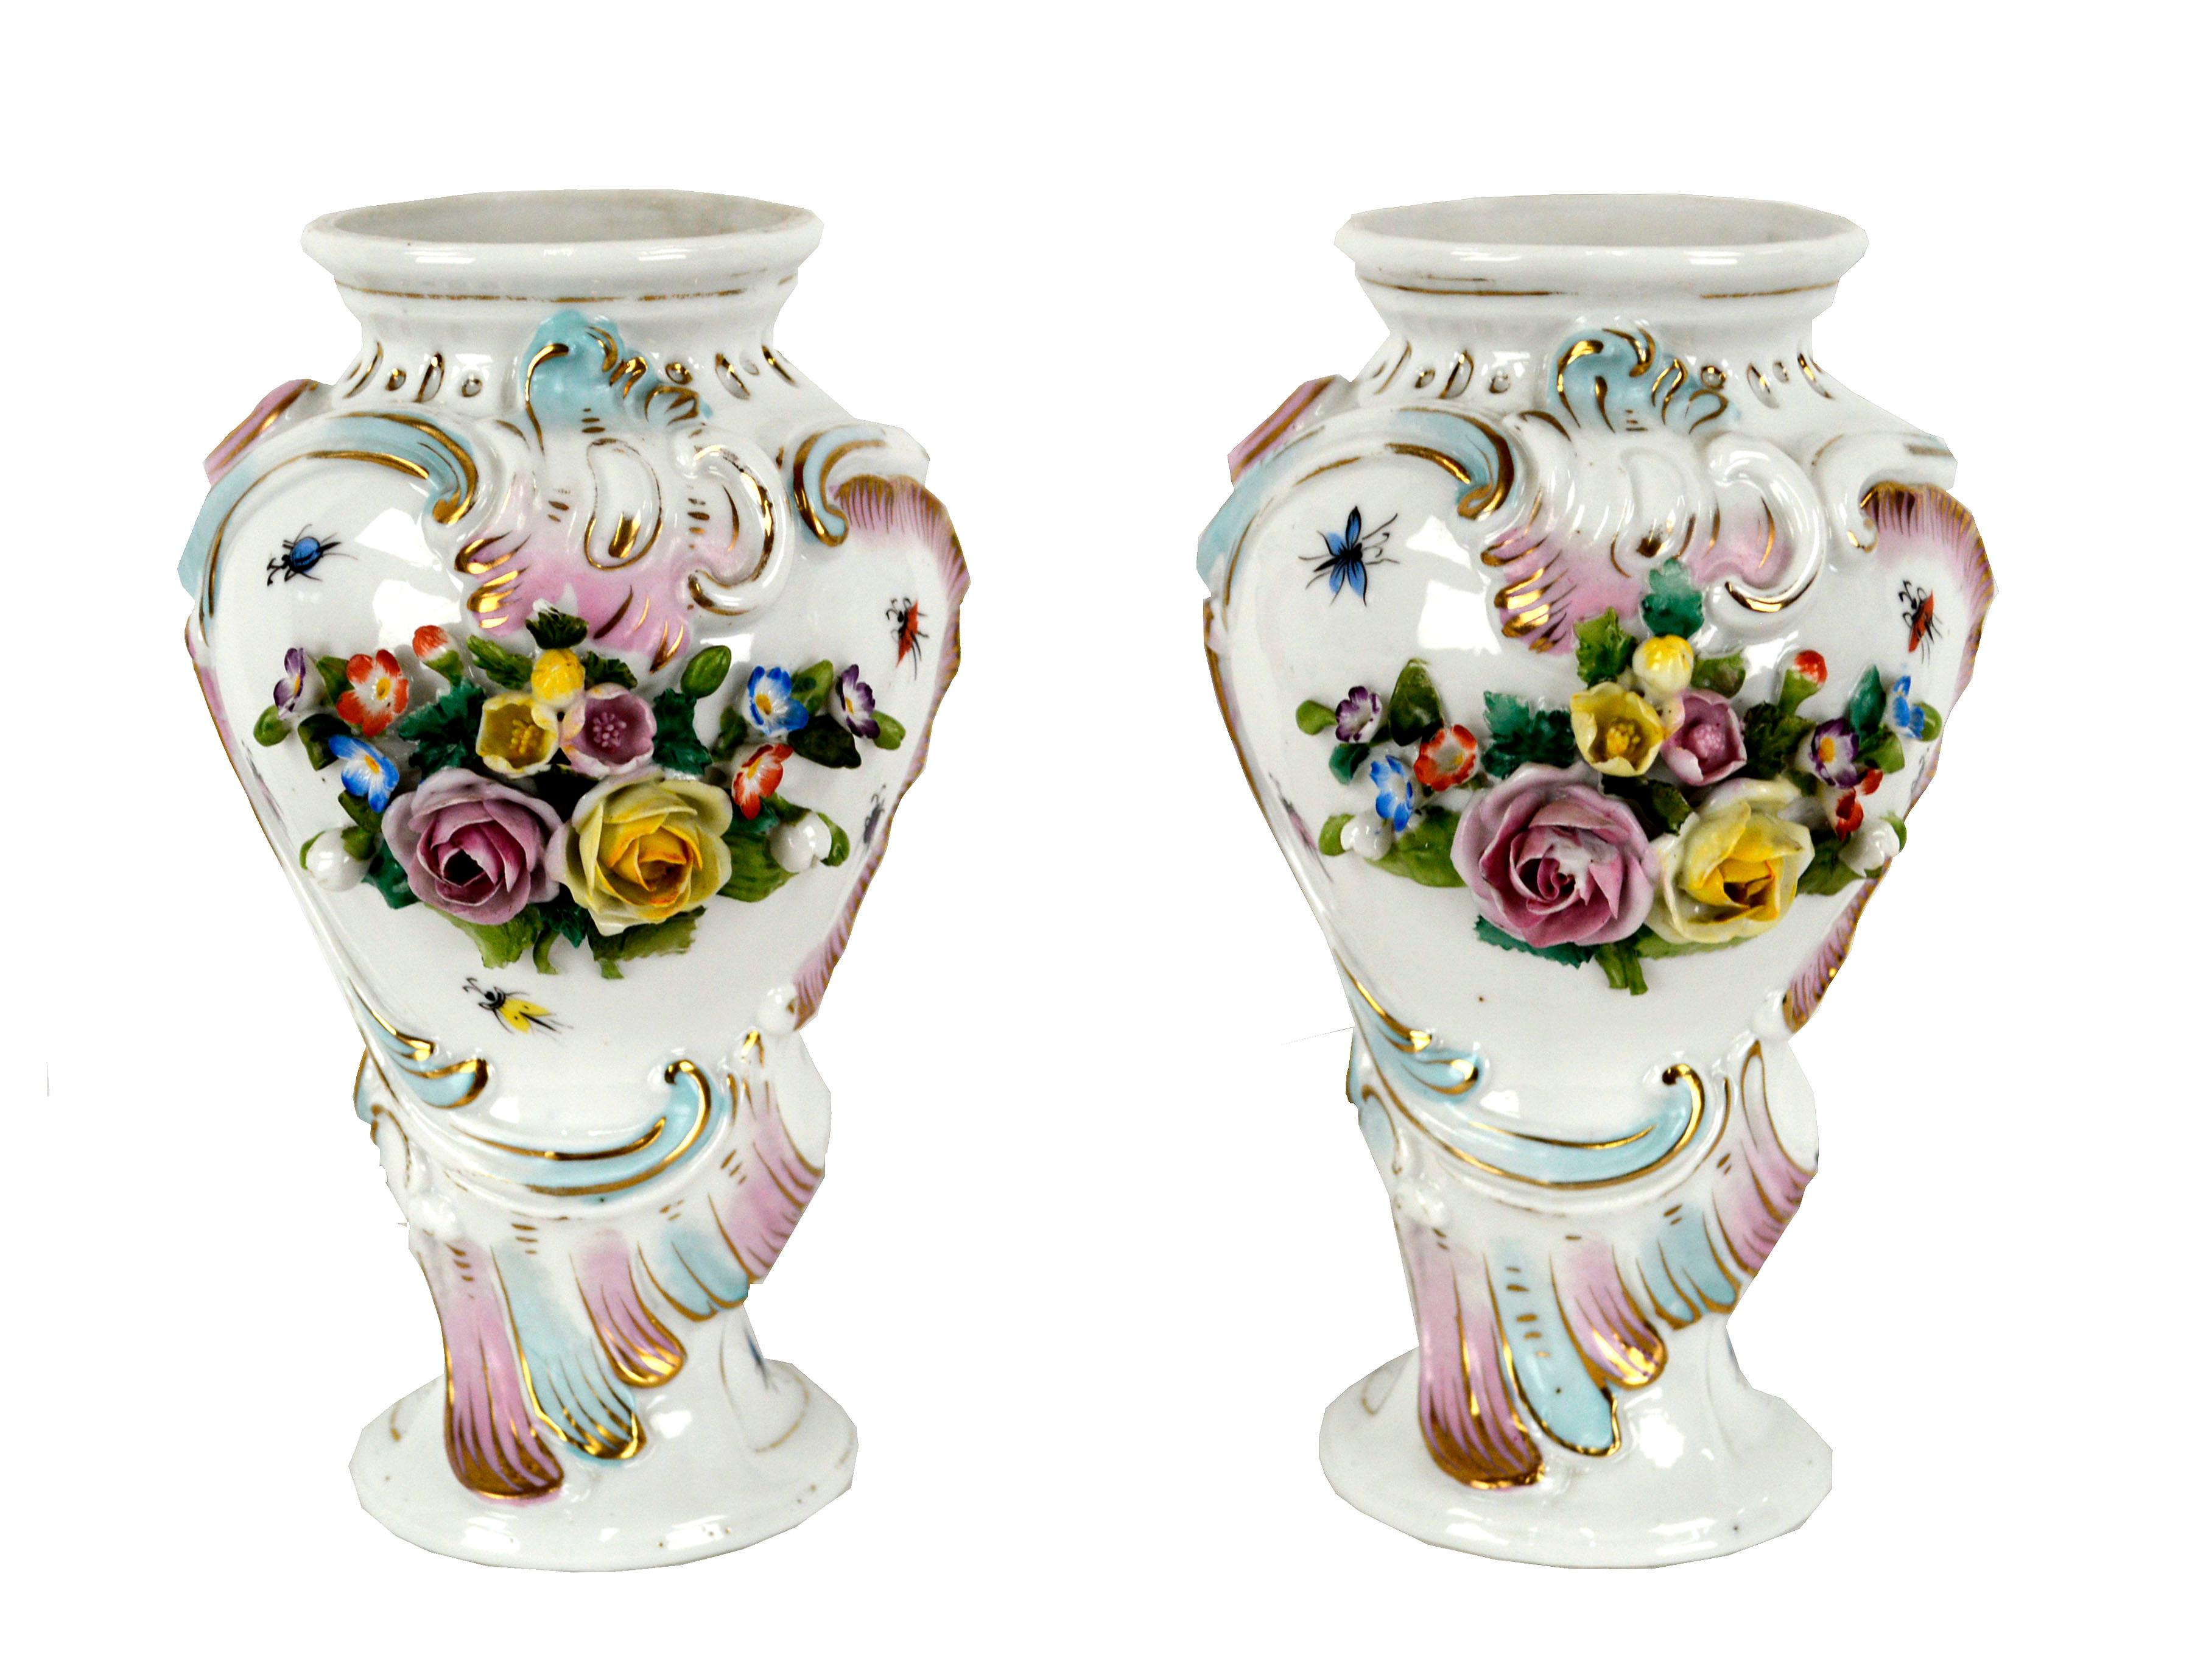 Paire d'exquis vases en porcelaine Royal Vienna du 19ème siècle. Bel exemple du style néoclassique autrichien, ces vases sont décorés d'un motif floral de jardin orné. Incrusté de bouquets sculpturaux de roses roses et jaunes, et peint avec de